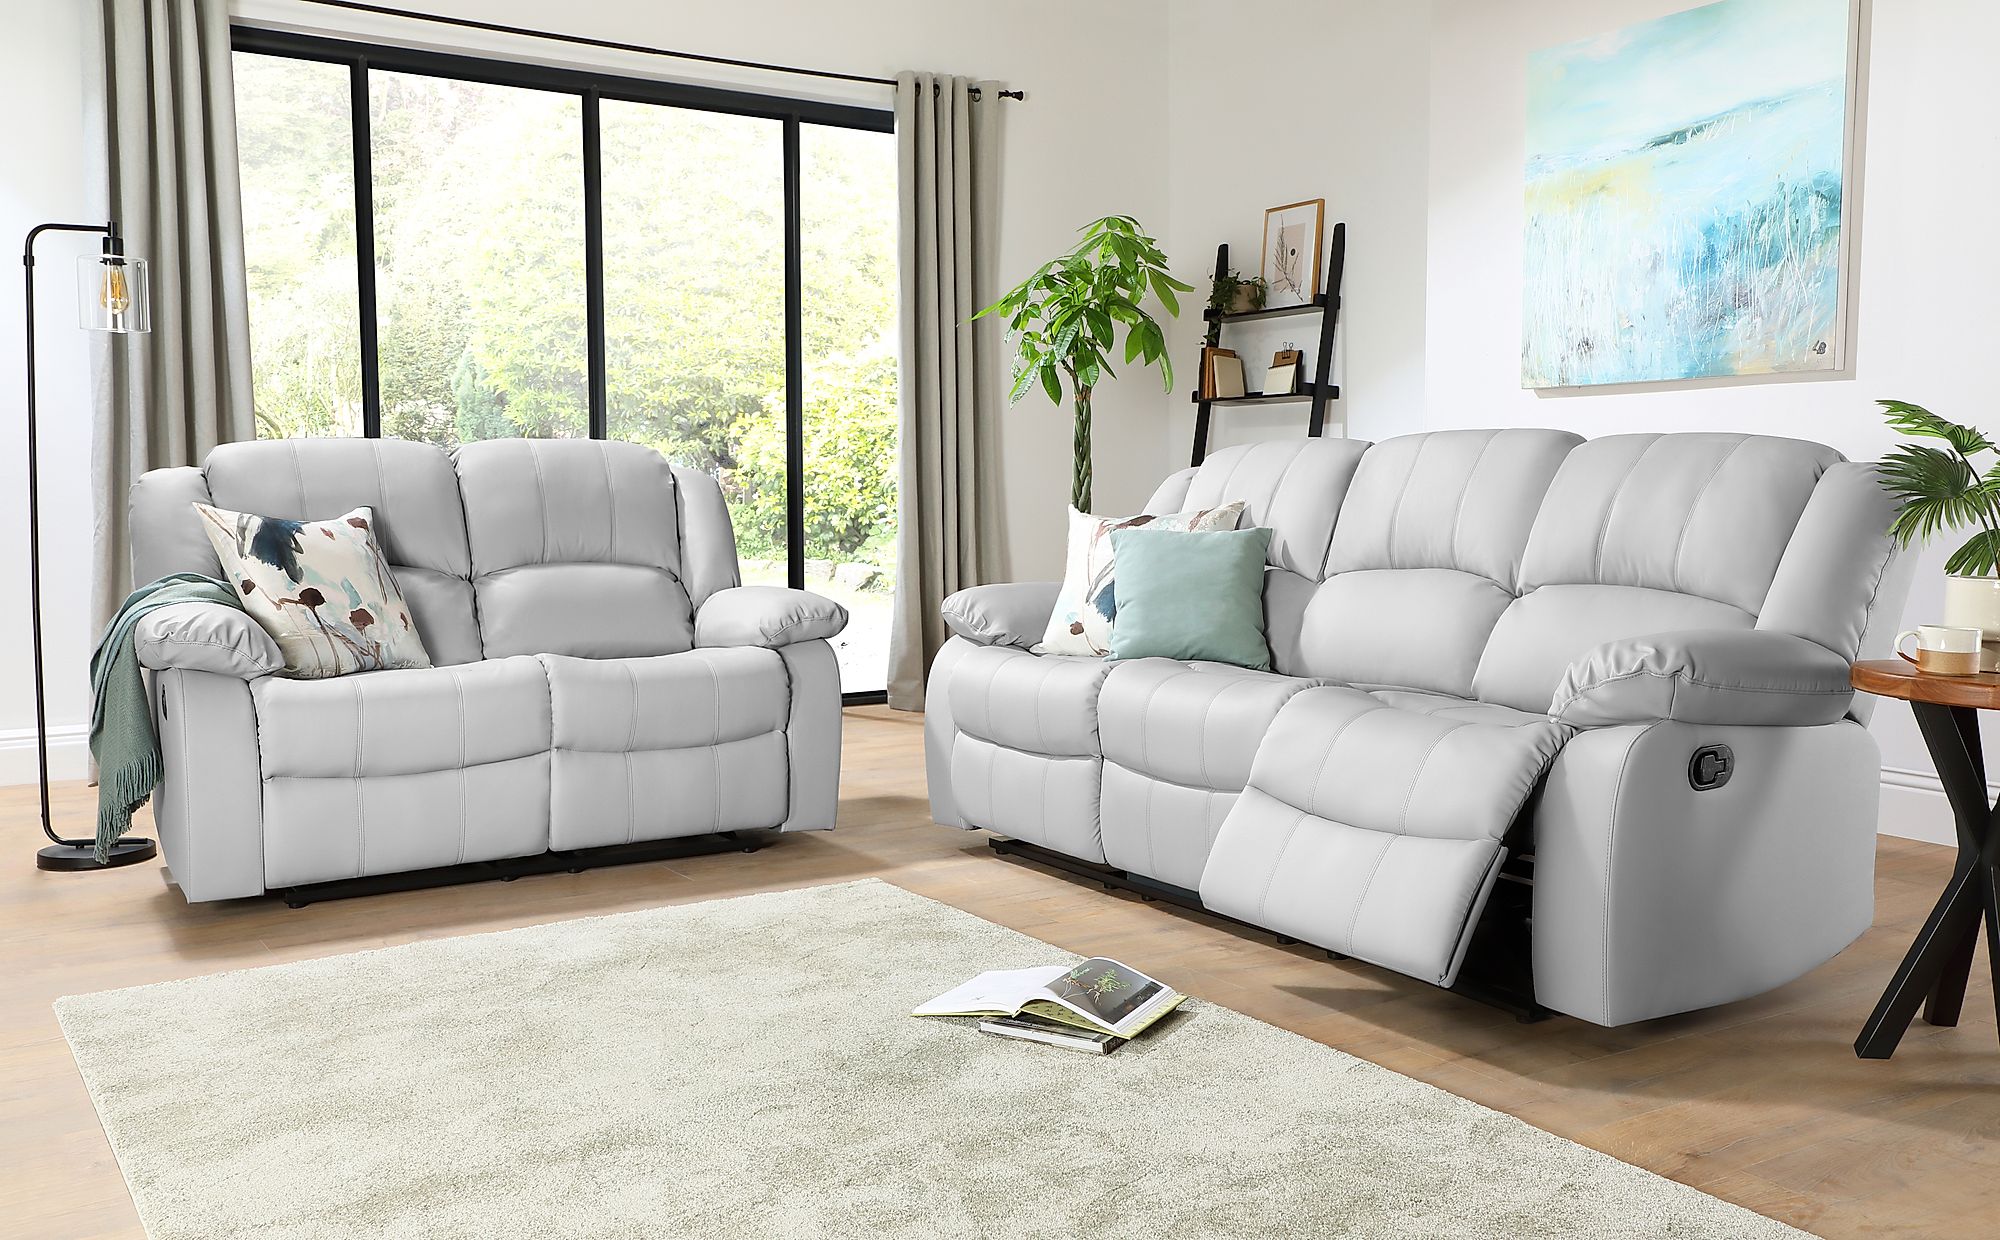 grey recliner sofa living room ideas